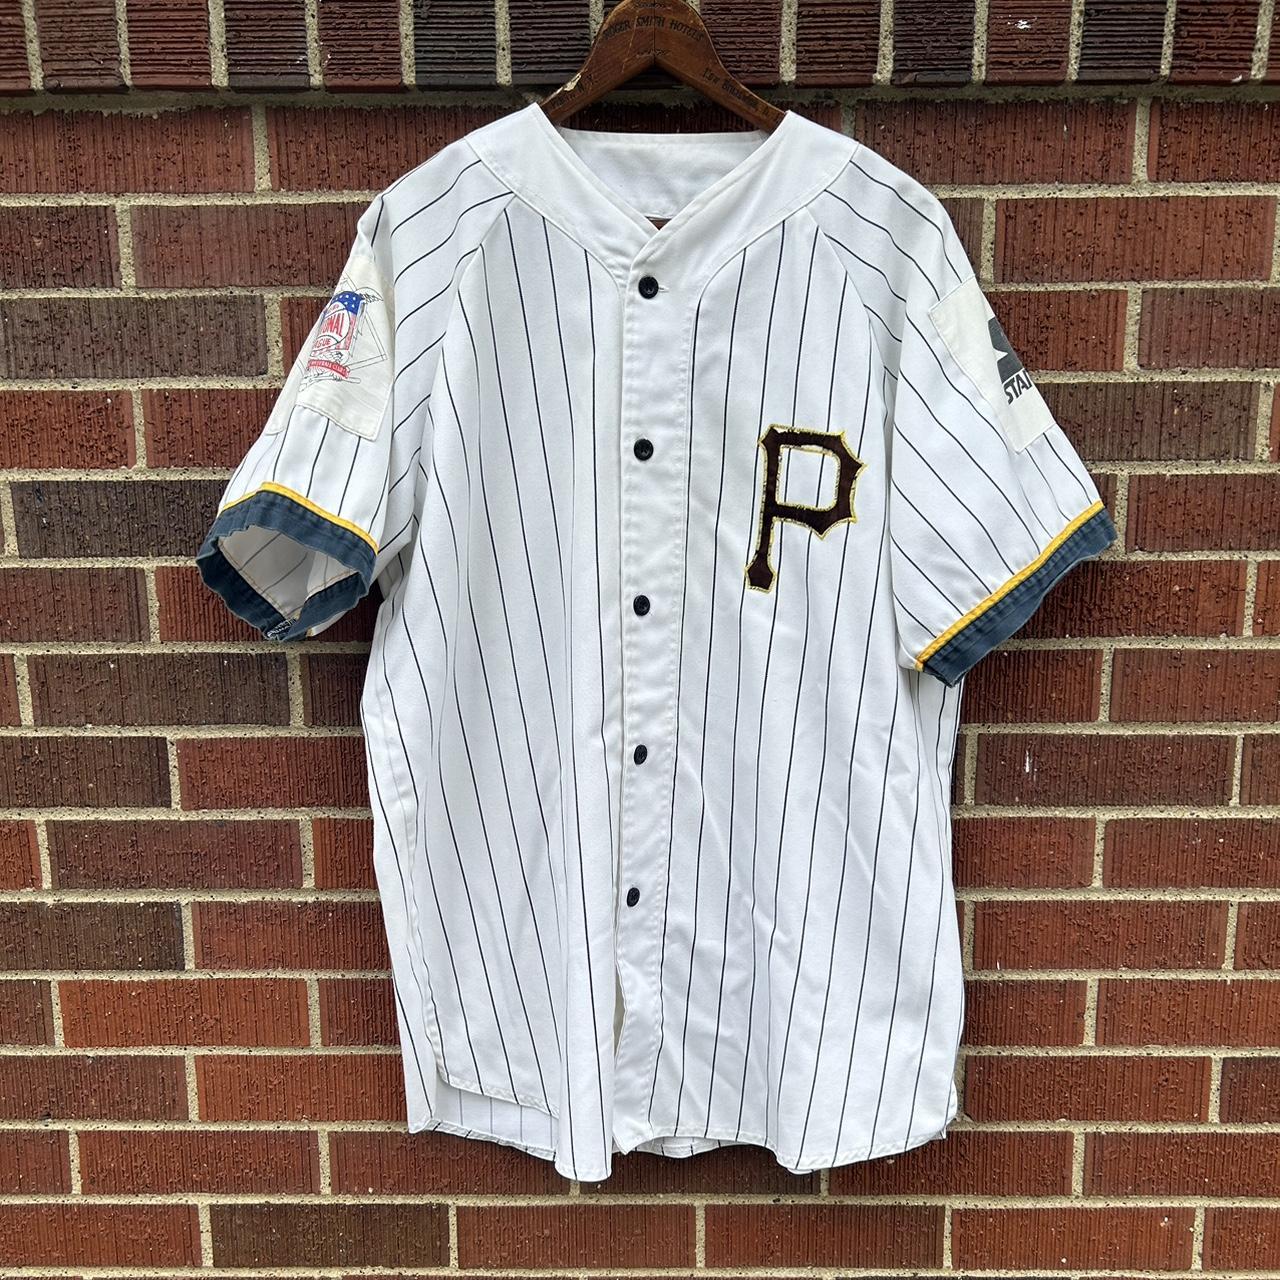 Pittsburgh Pirates Vintage Starter Pinstripe Jersey (L)